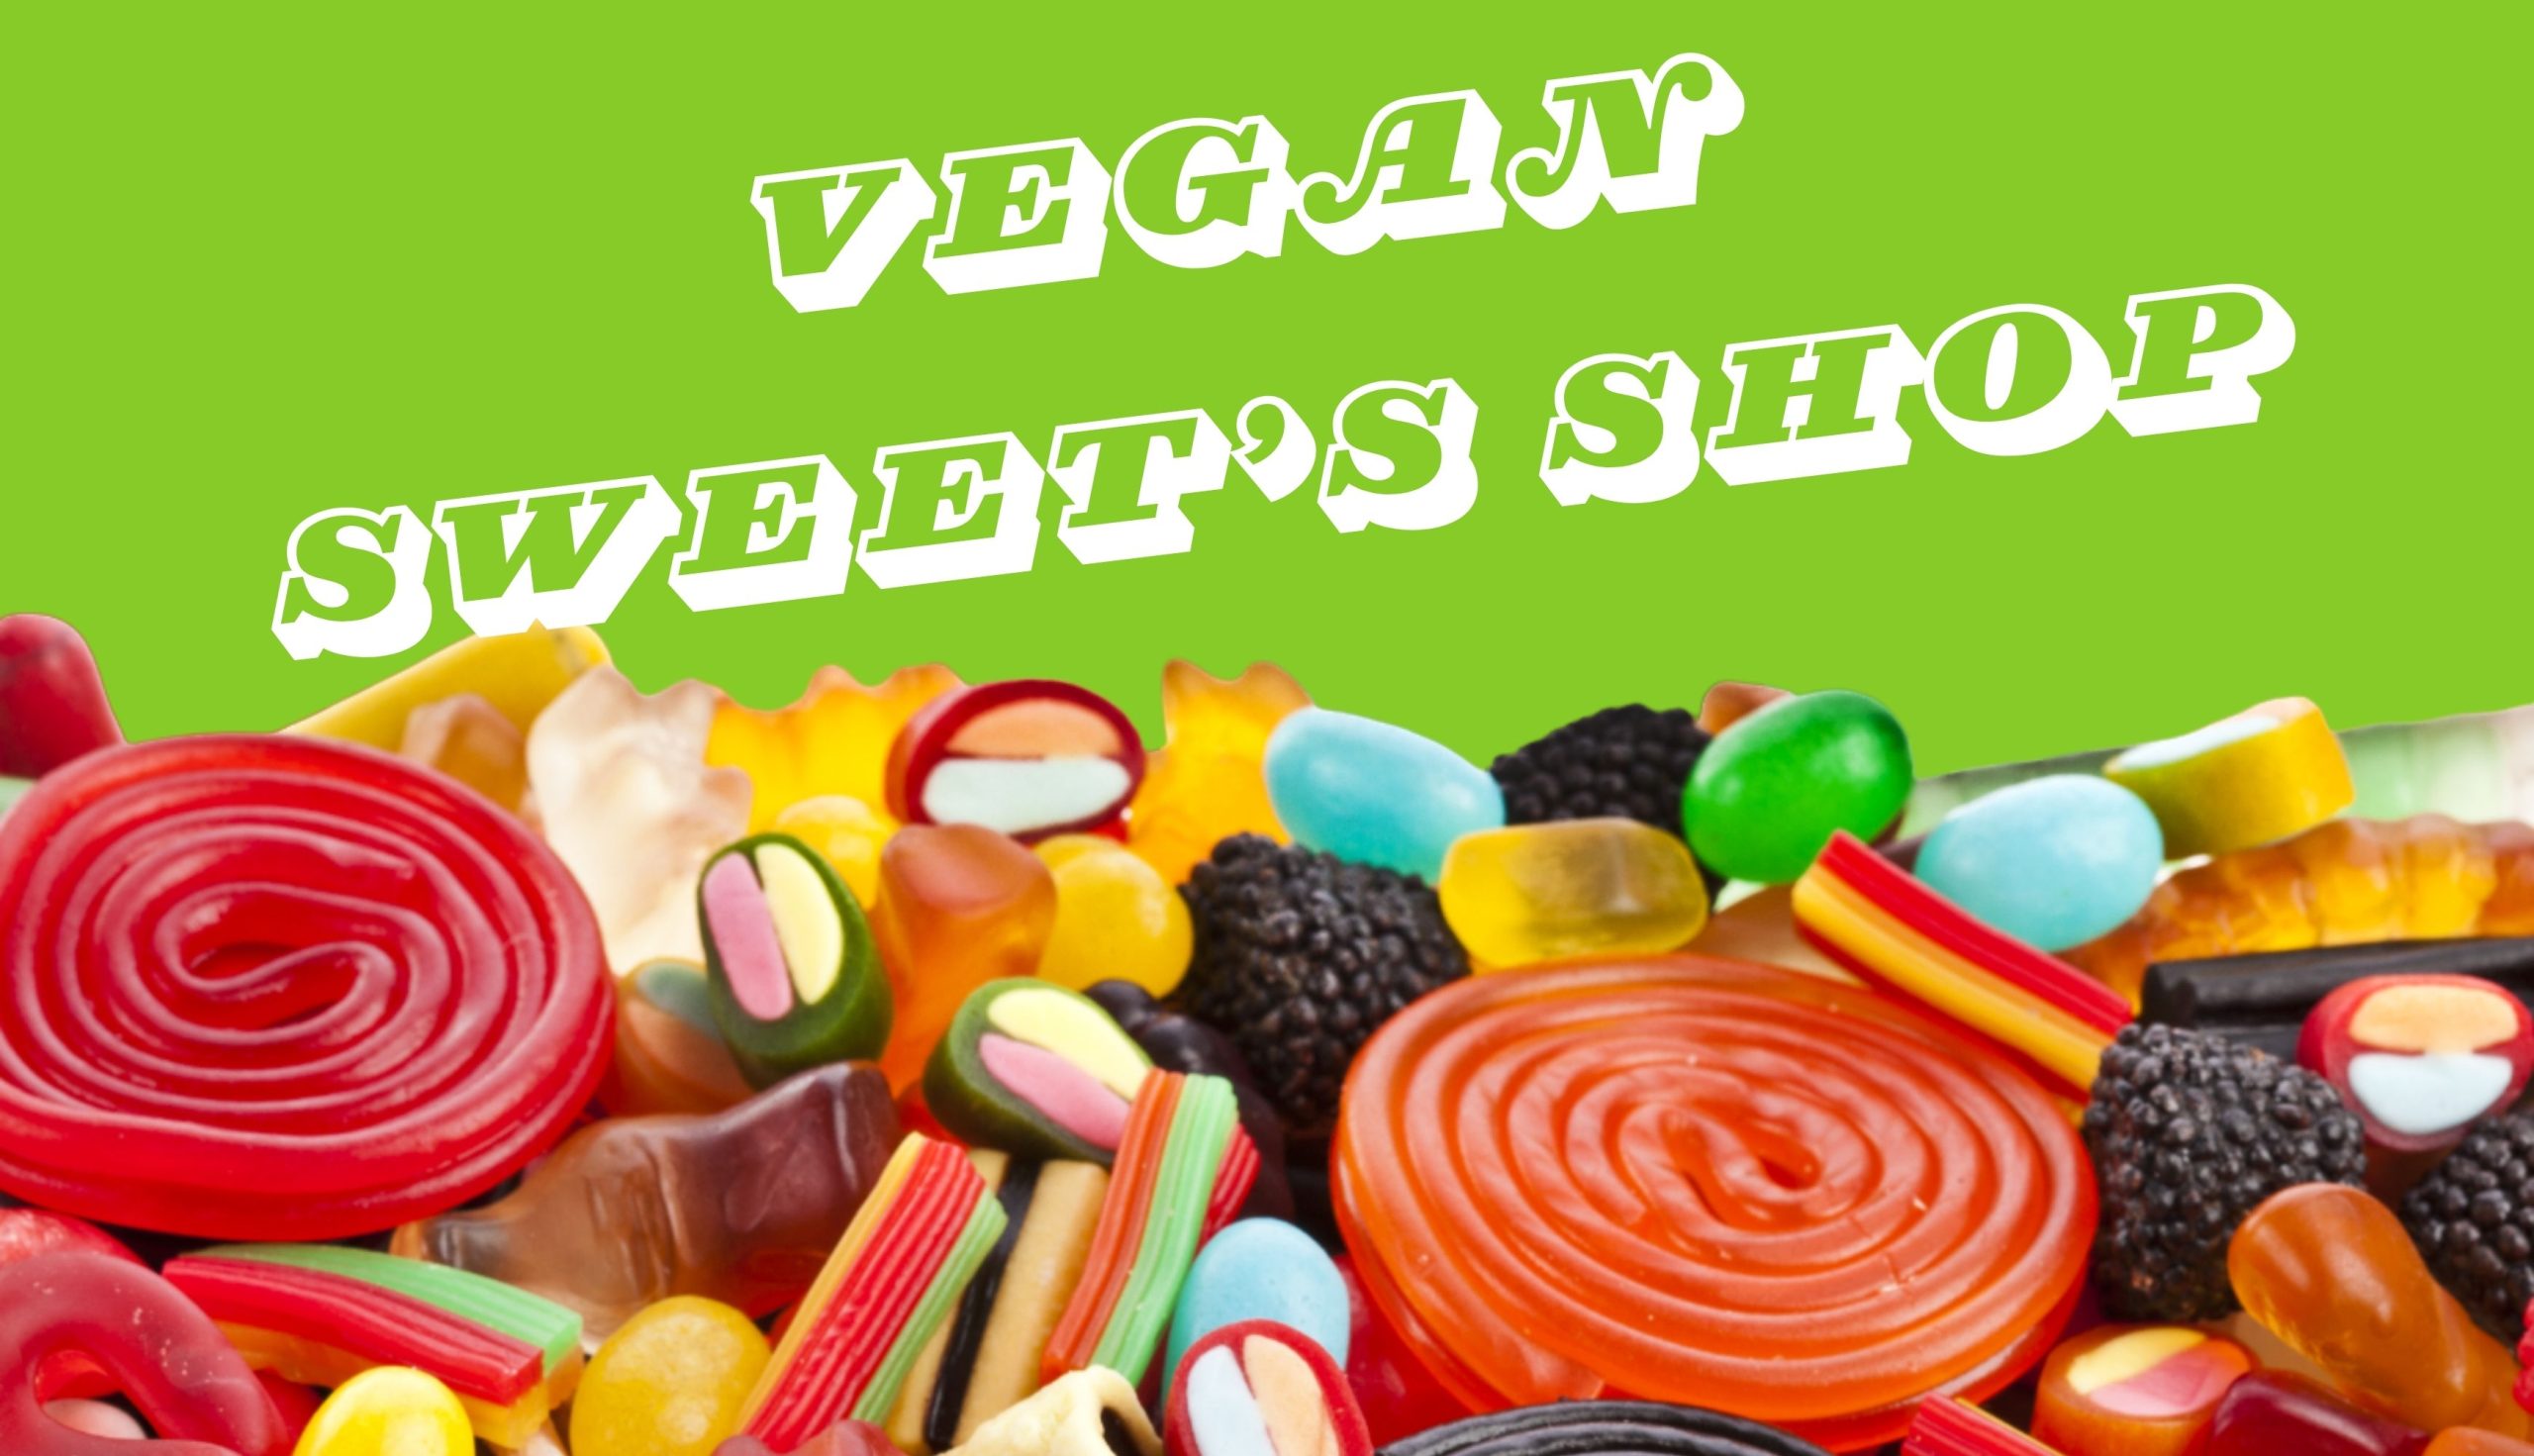 i migliori dolci vegani all’ingrosso per la tua attività